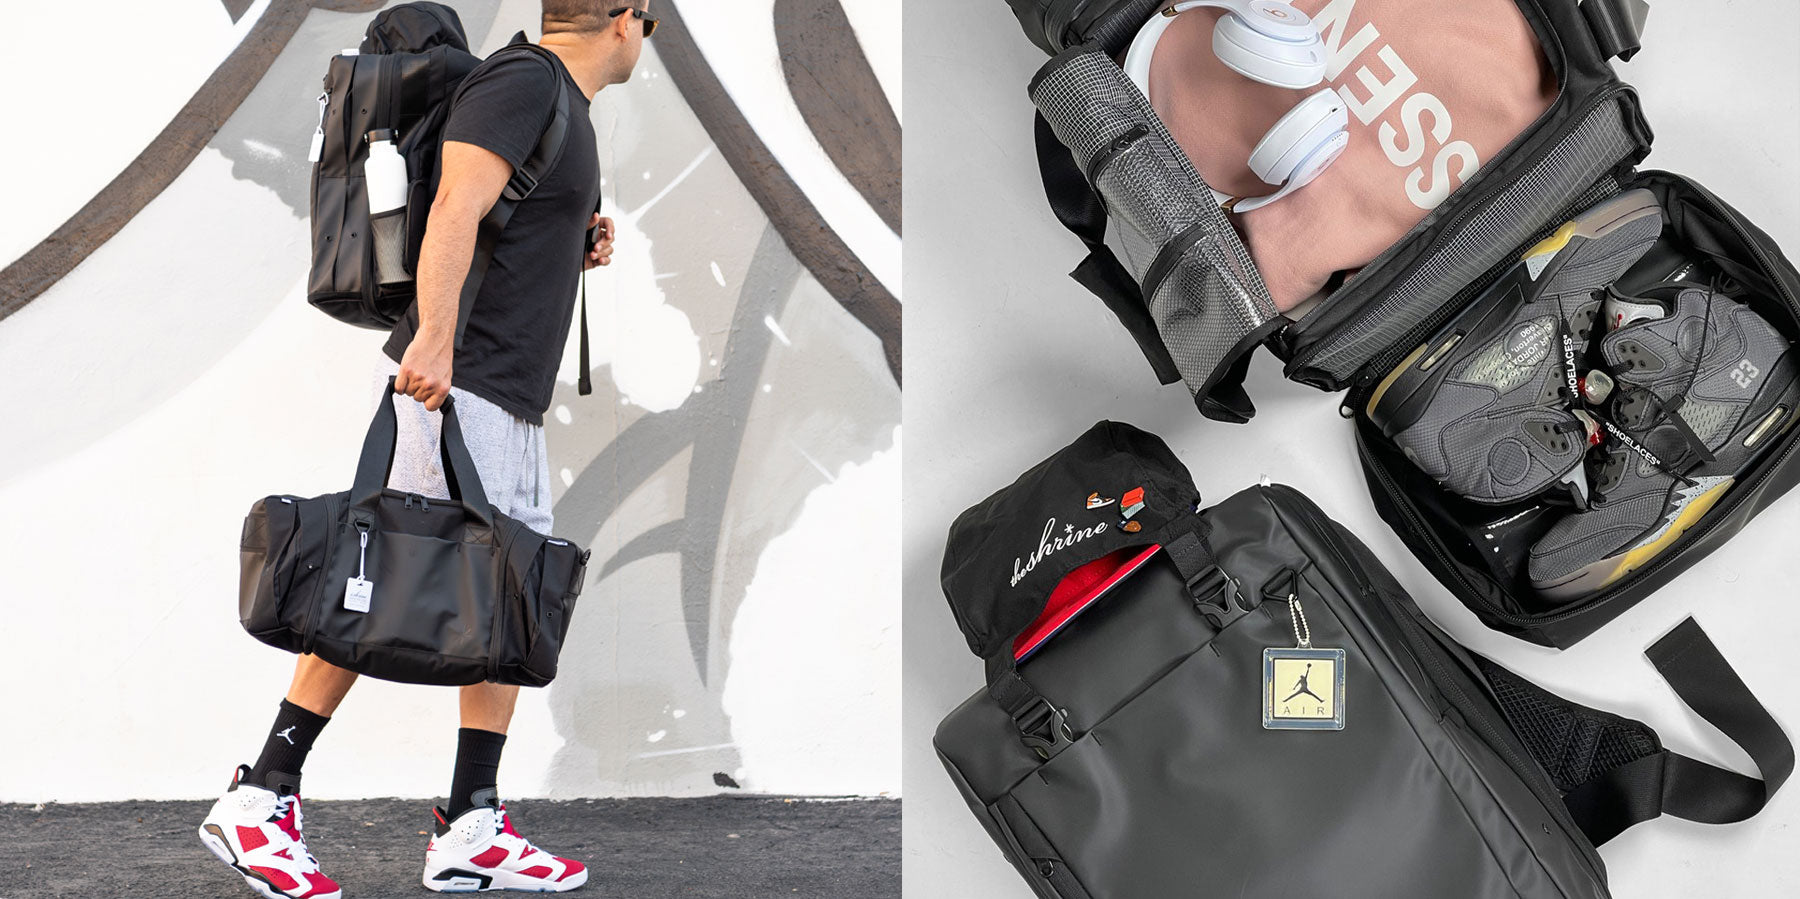 Roaring Sneaker & Broaring Bag Set, Bundles